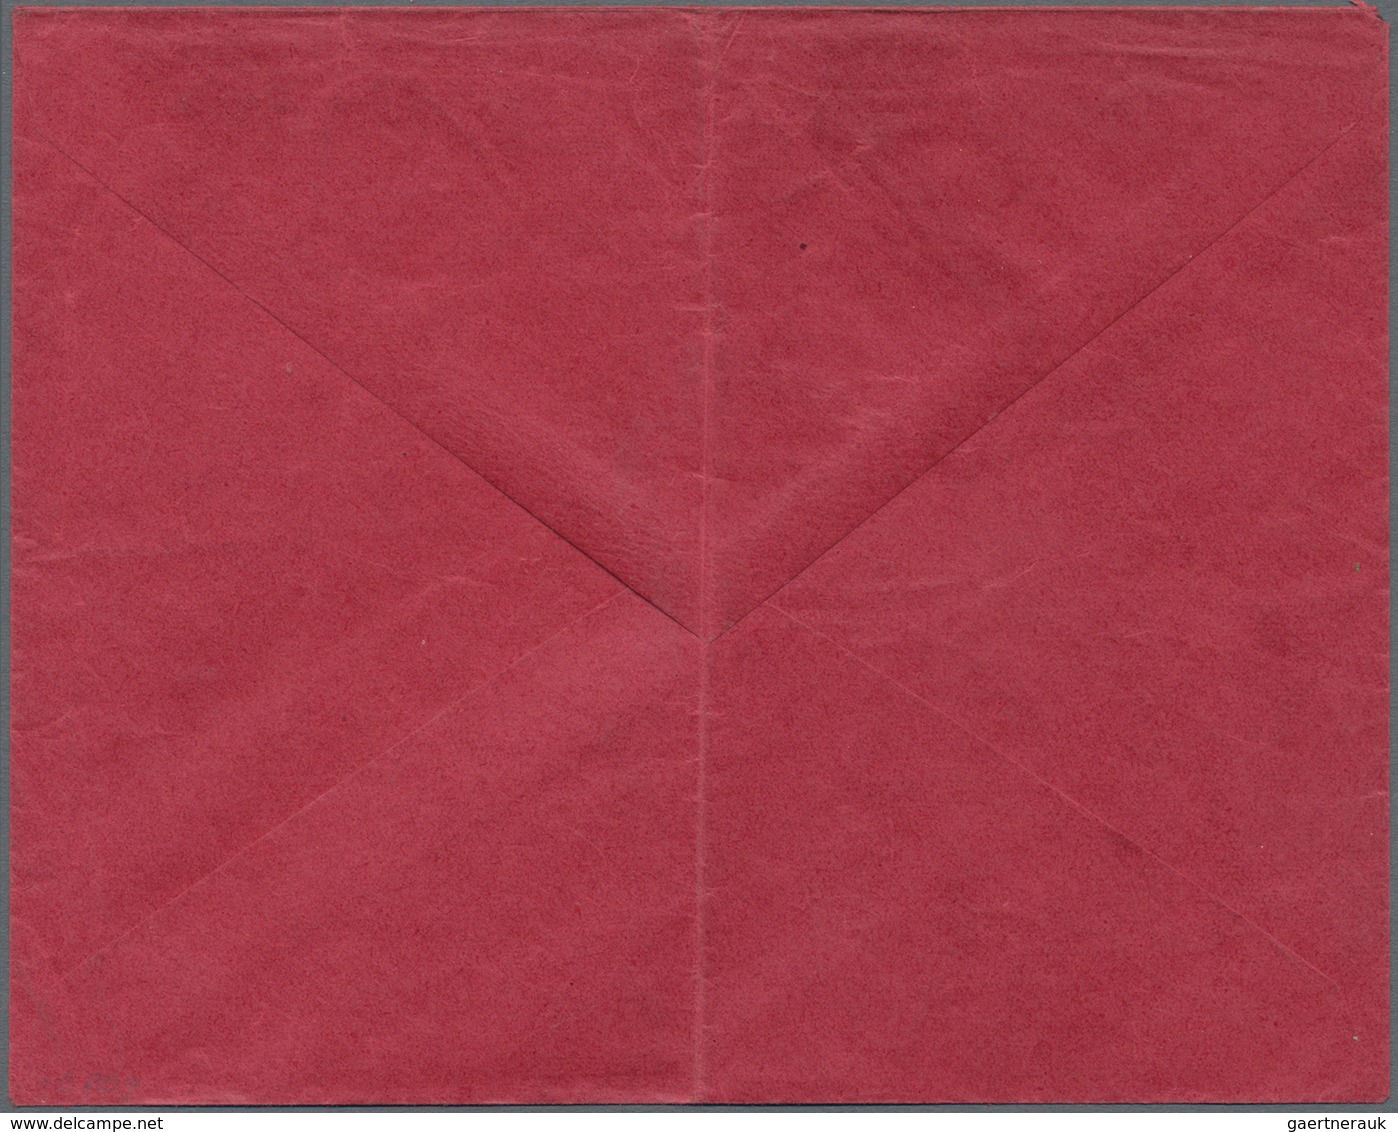 Deutsche Post In China: 1905: 2 C. Überdruckmarke EF Am 26.2.1905 Auf Rotem Vordruckbrief "Telegramm - China (kantoren)